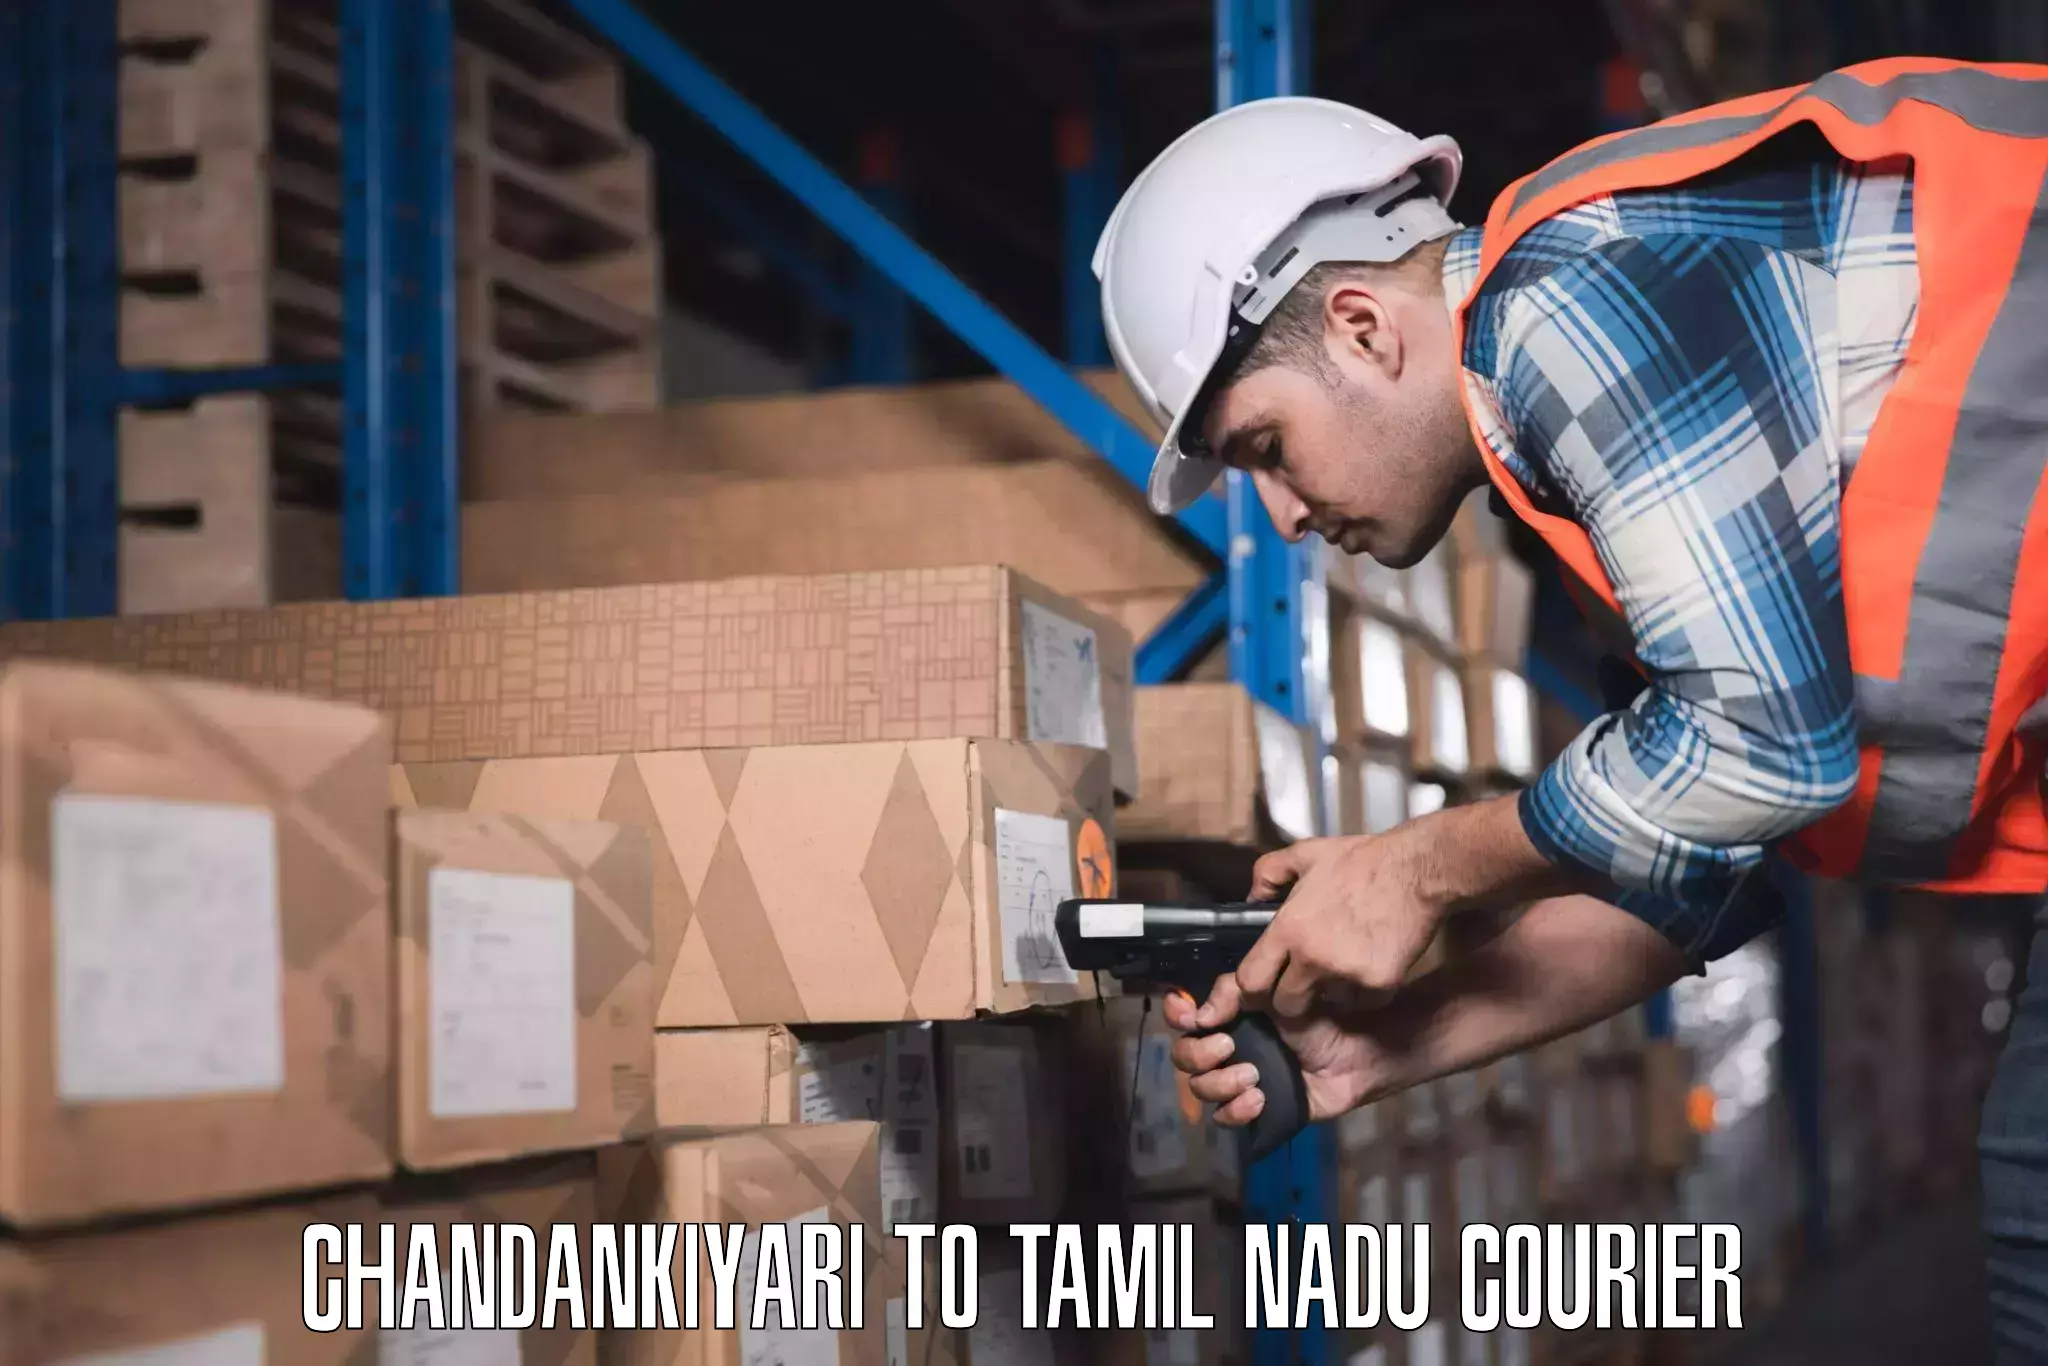 Urban luggage shipping Chandankiyari to Tamil Nadu